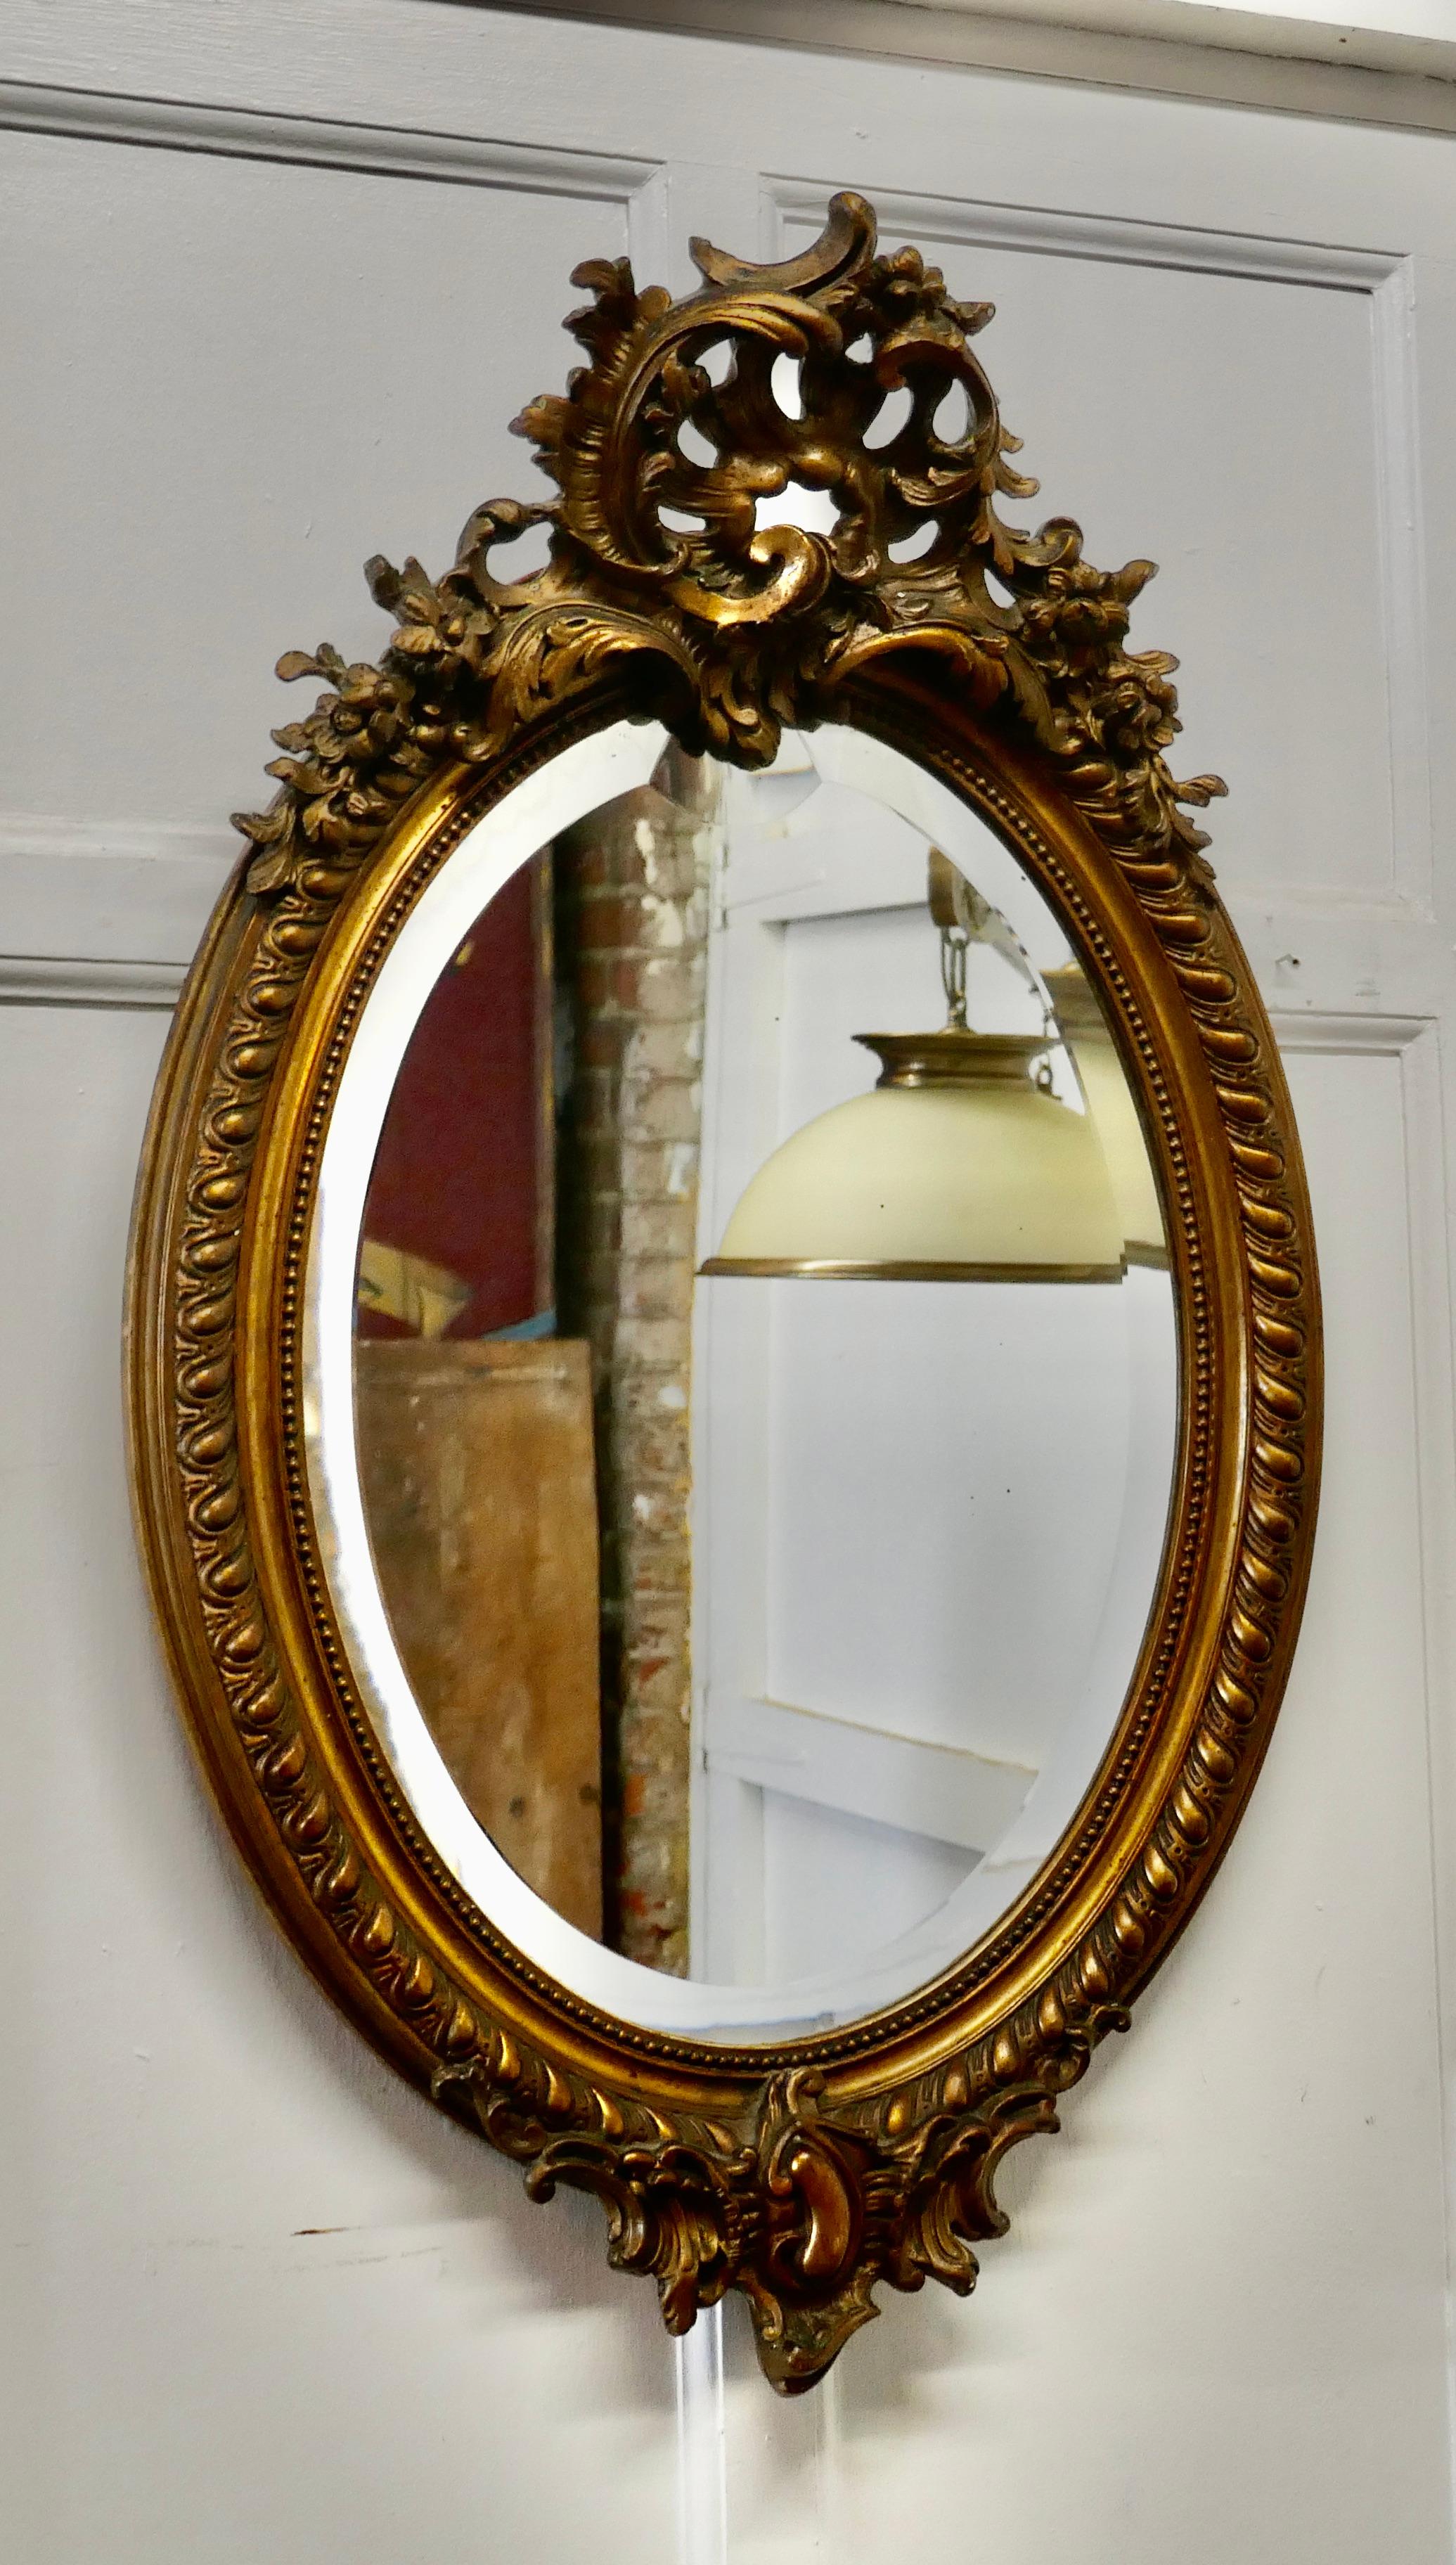 Grand miroir mural Rococo français ovale et doré

Le miroir a un cadre doré exquis dans le style rococo, il est décoré de coquillages, de guirlandes et de feuilles avec un bord en corde torsadée
Le grand cadre ovale noirci par l'âge est fait de